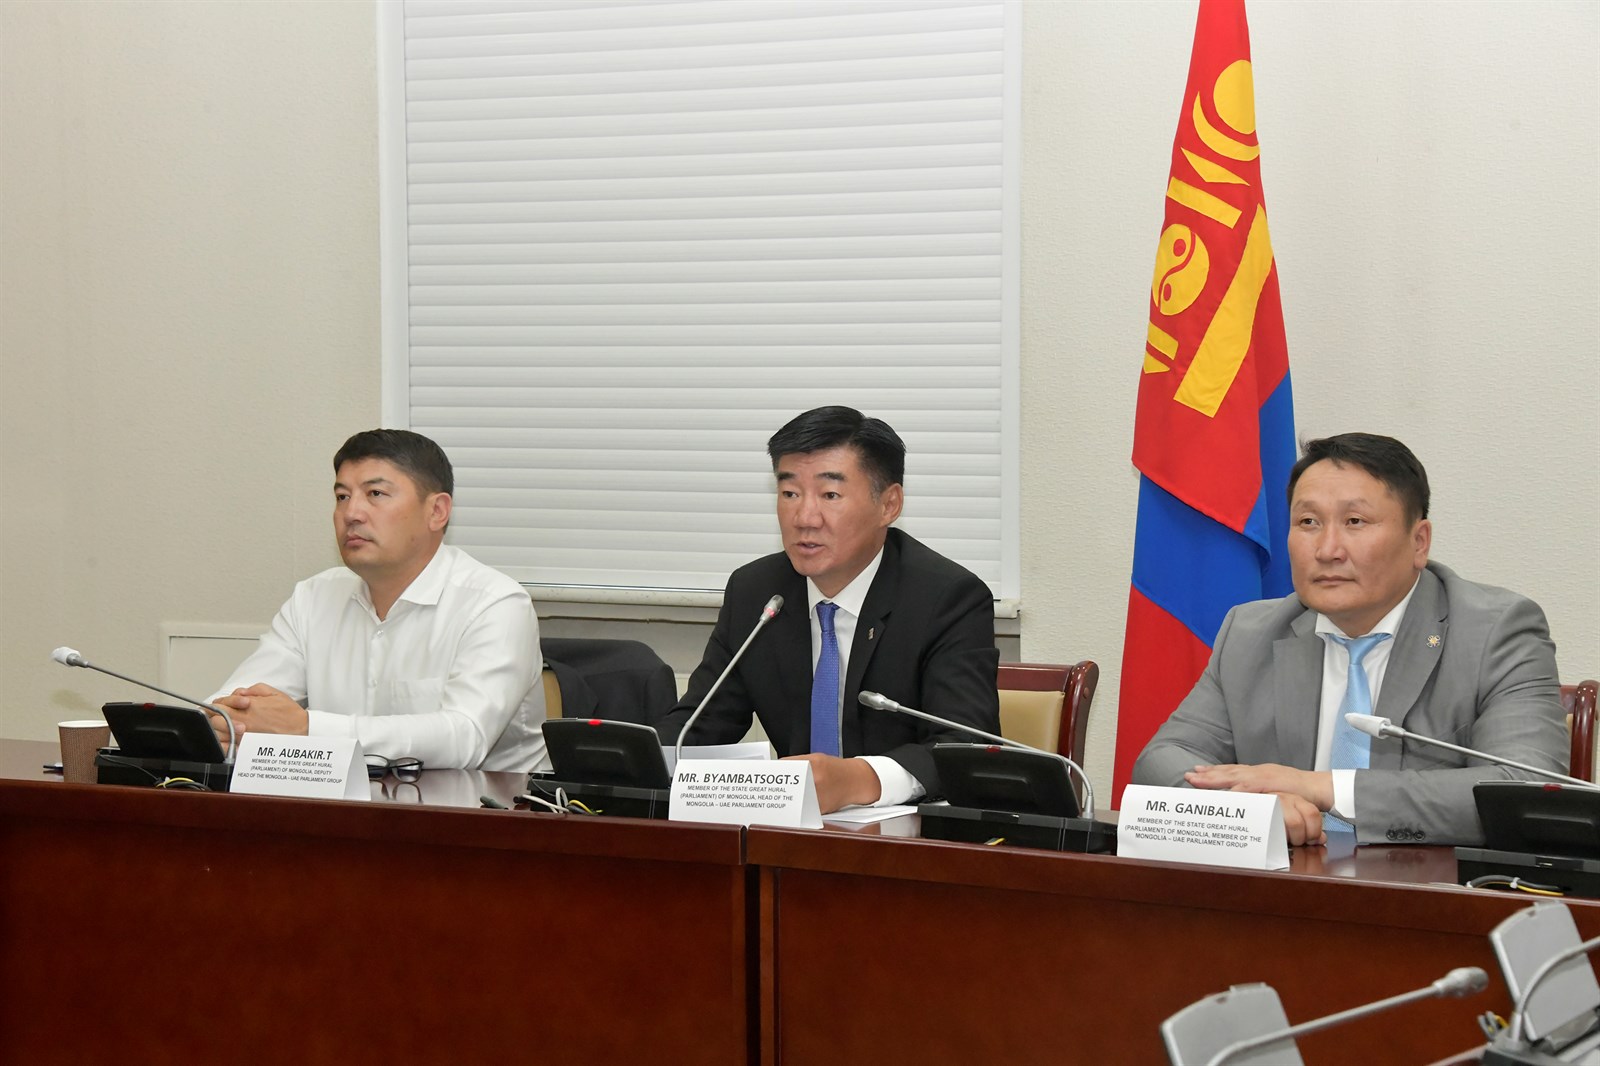 Монгол, Эмиратын парламент дахь найрамдлын бүлэг хоорондын анхдугаар цахим уулзалт боллоо